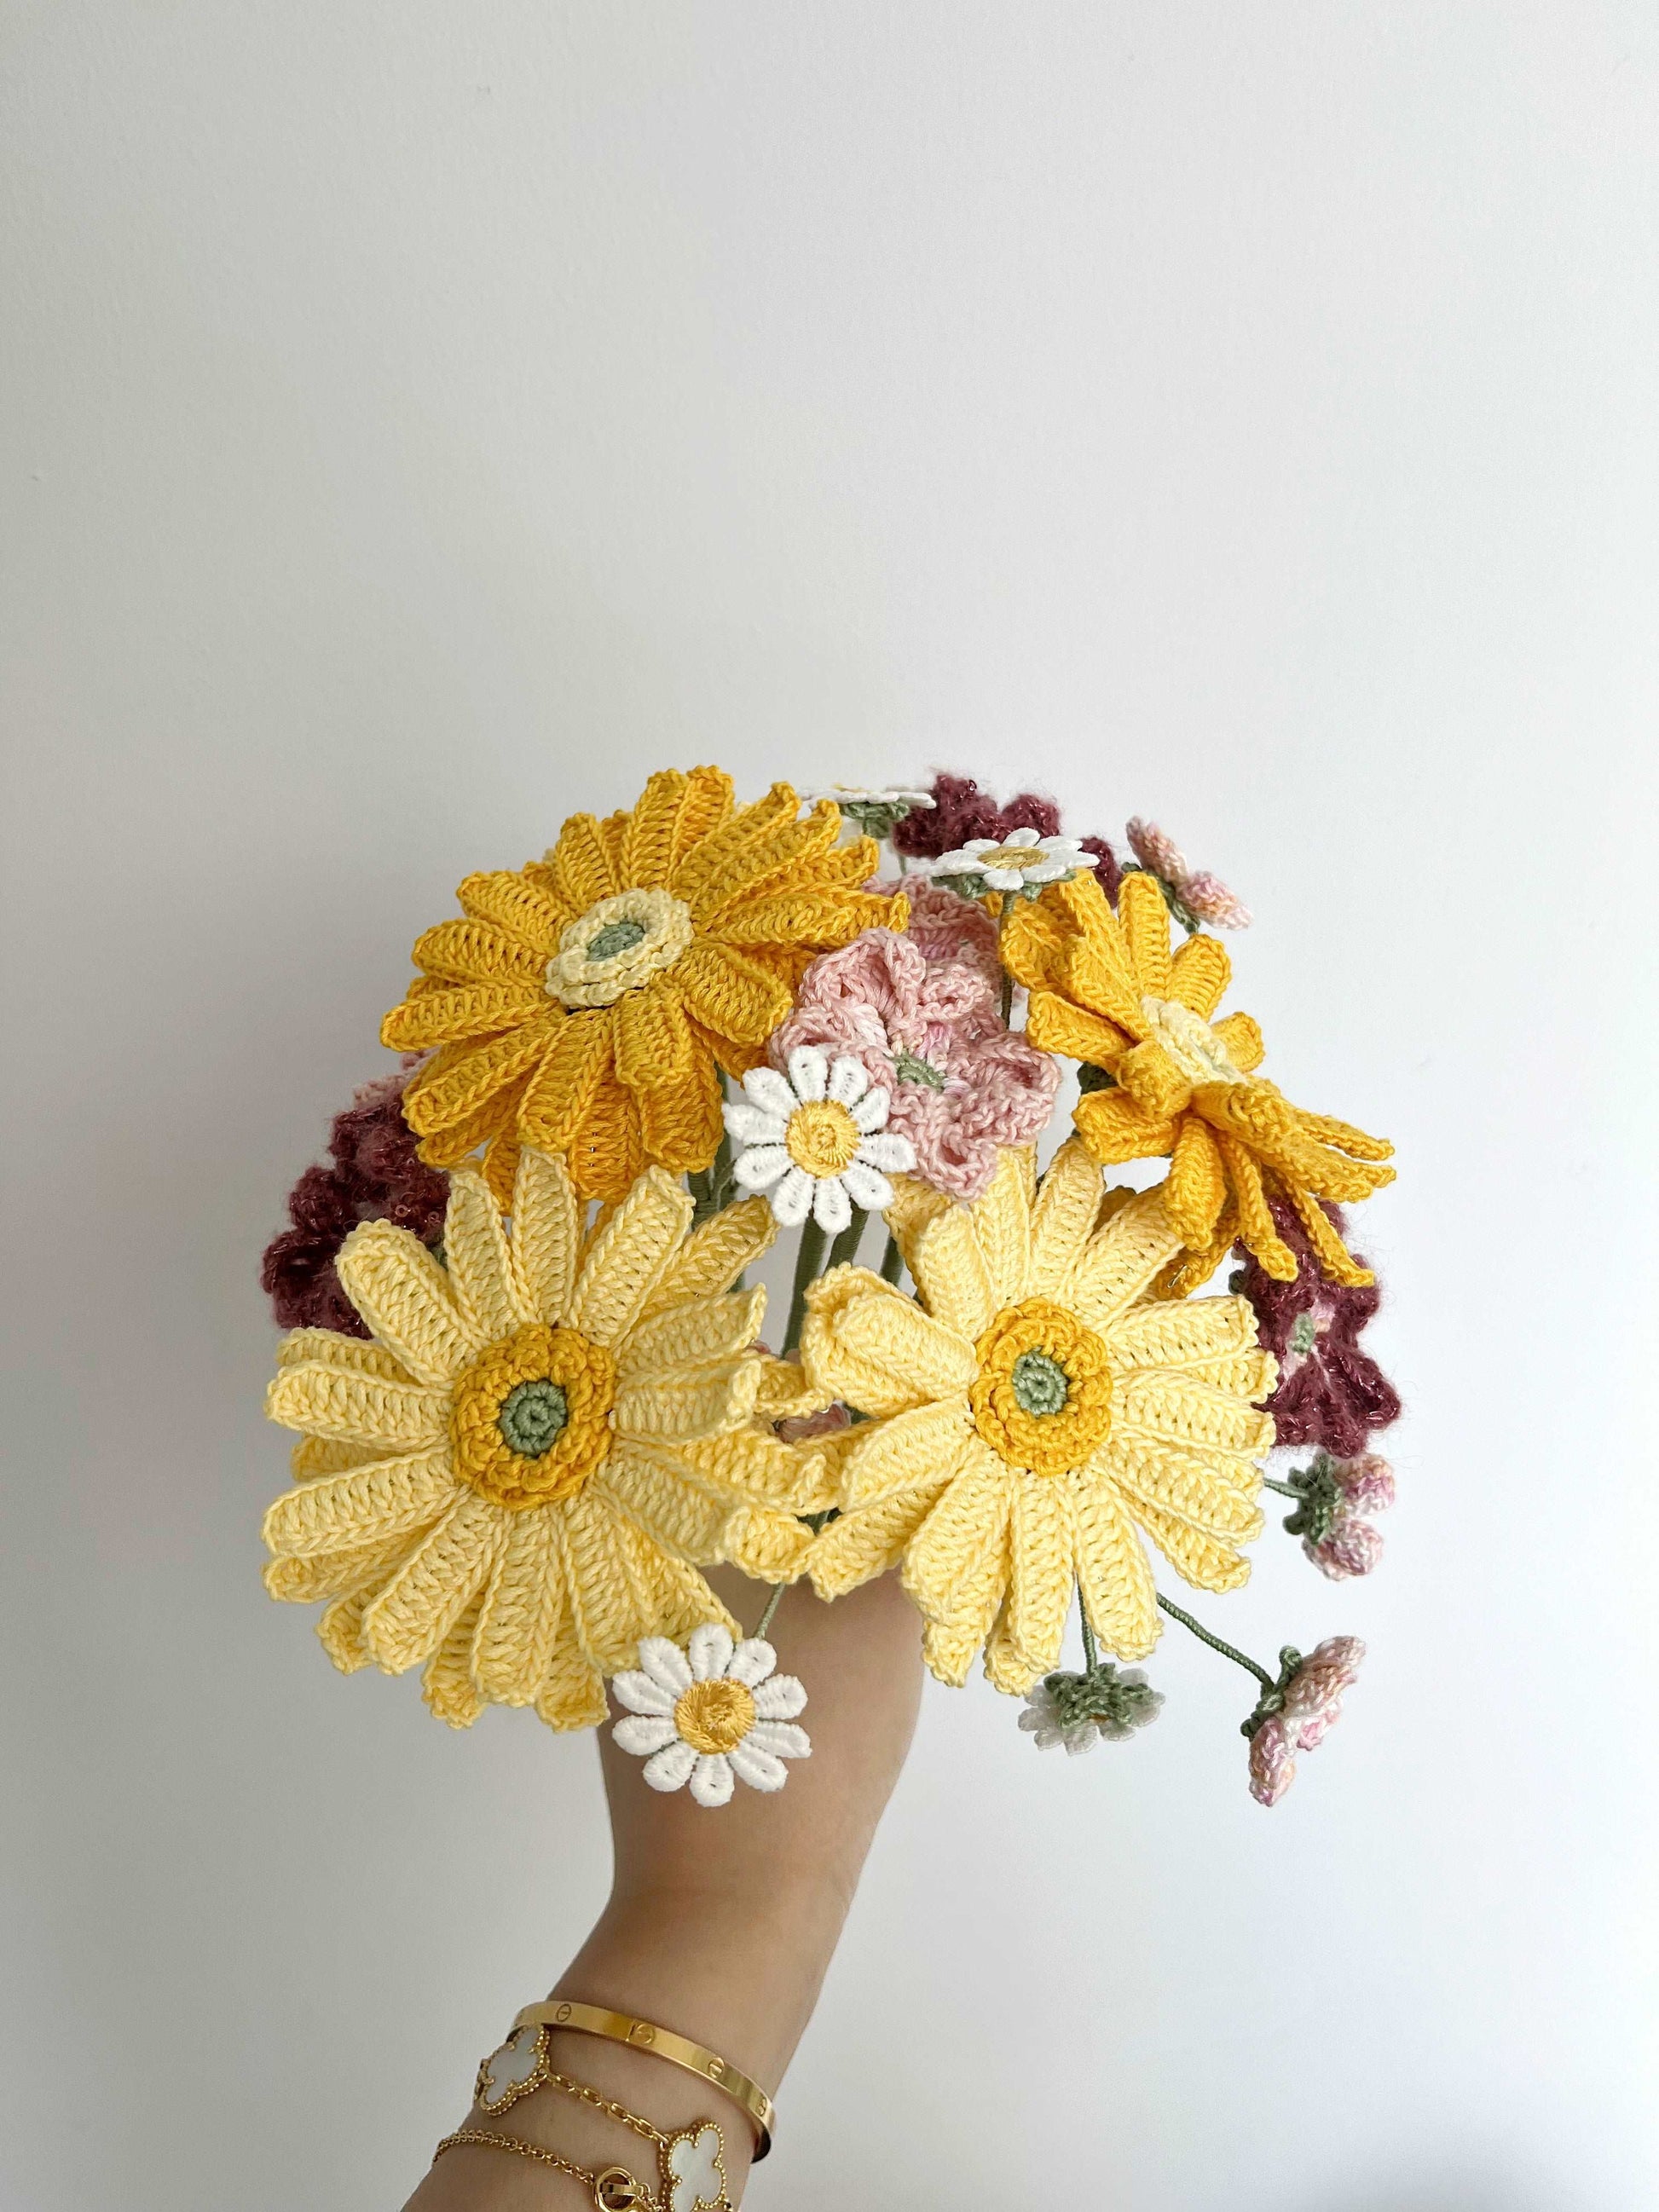 Handmade Yellow Chrysanthemum Bunch: Perfect Gift Idea